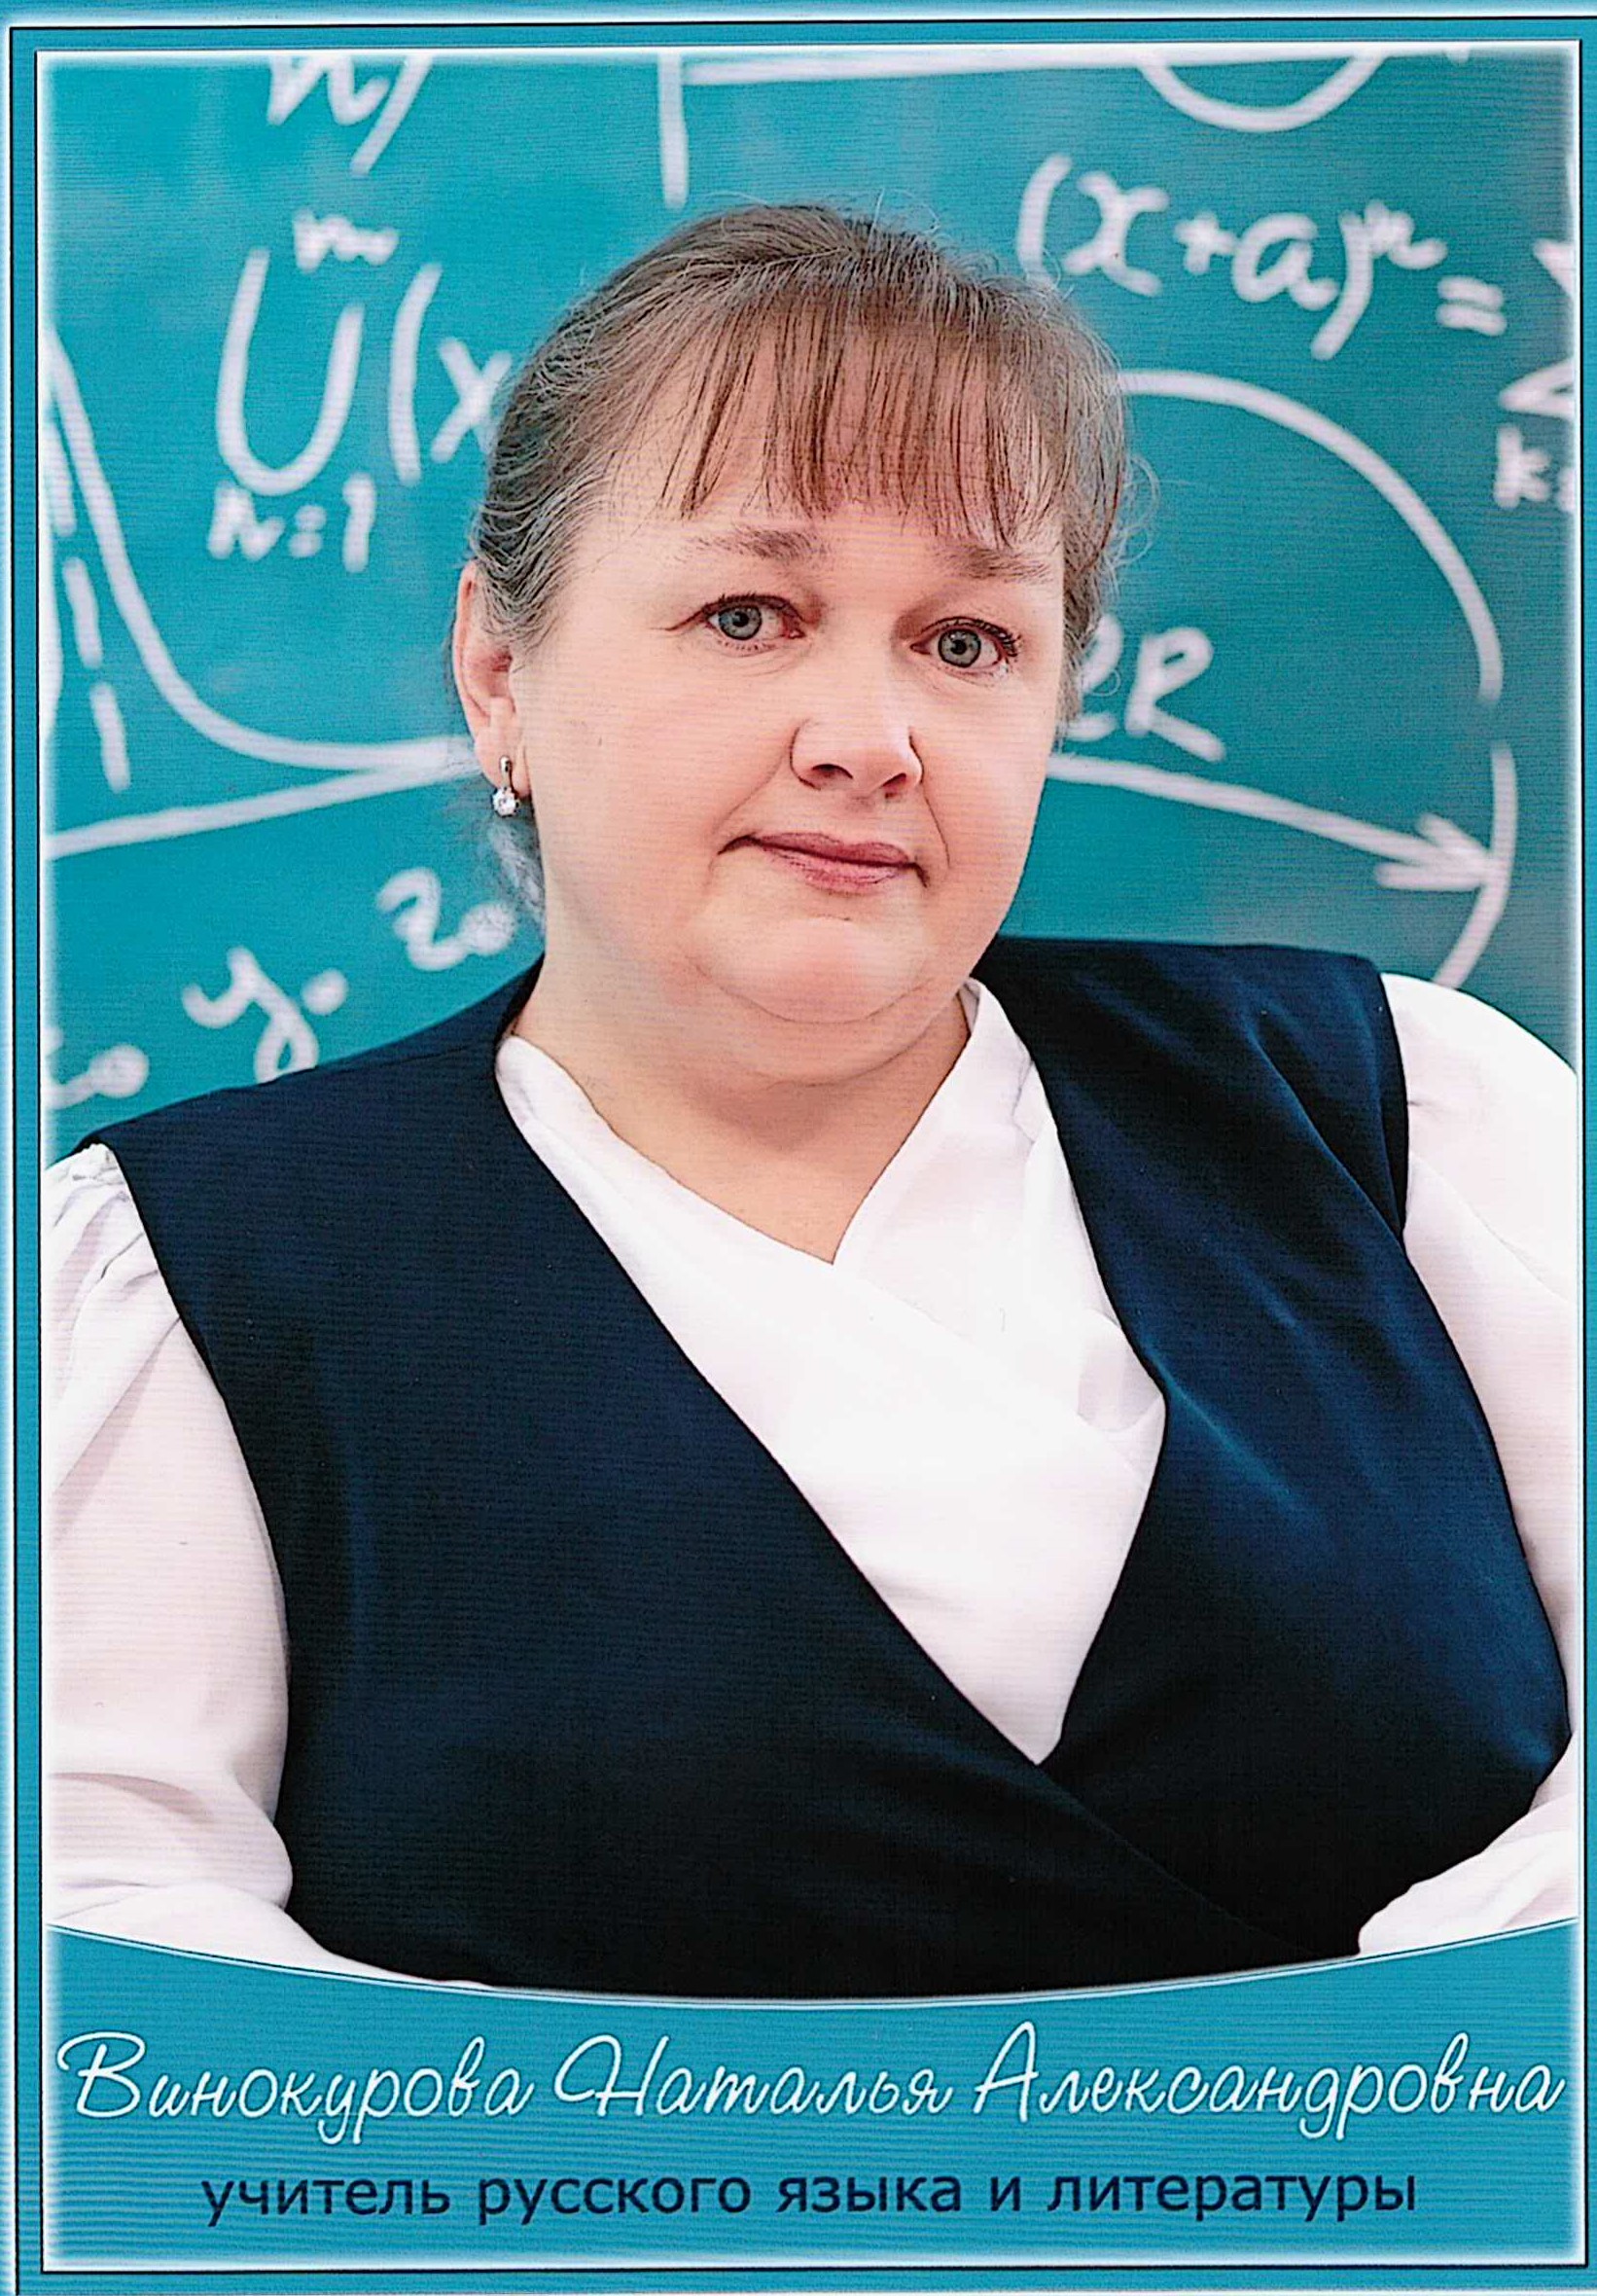 Винокурова Наталья Александровна.